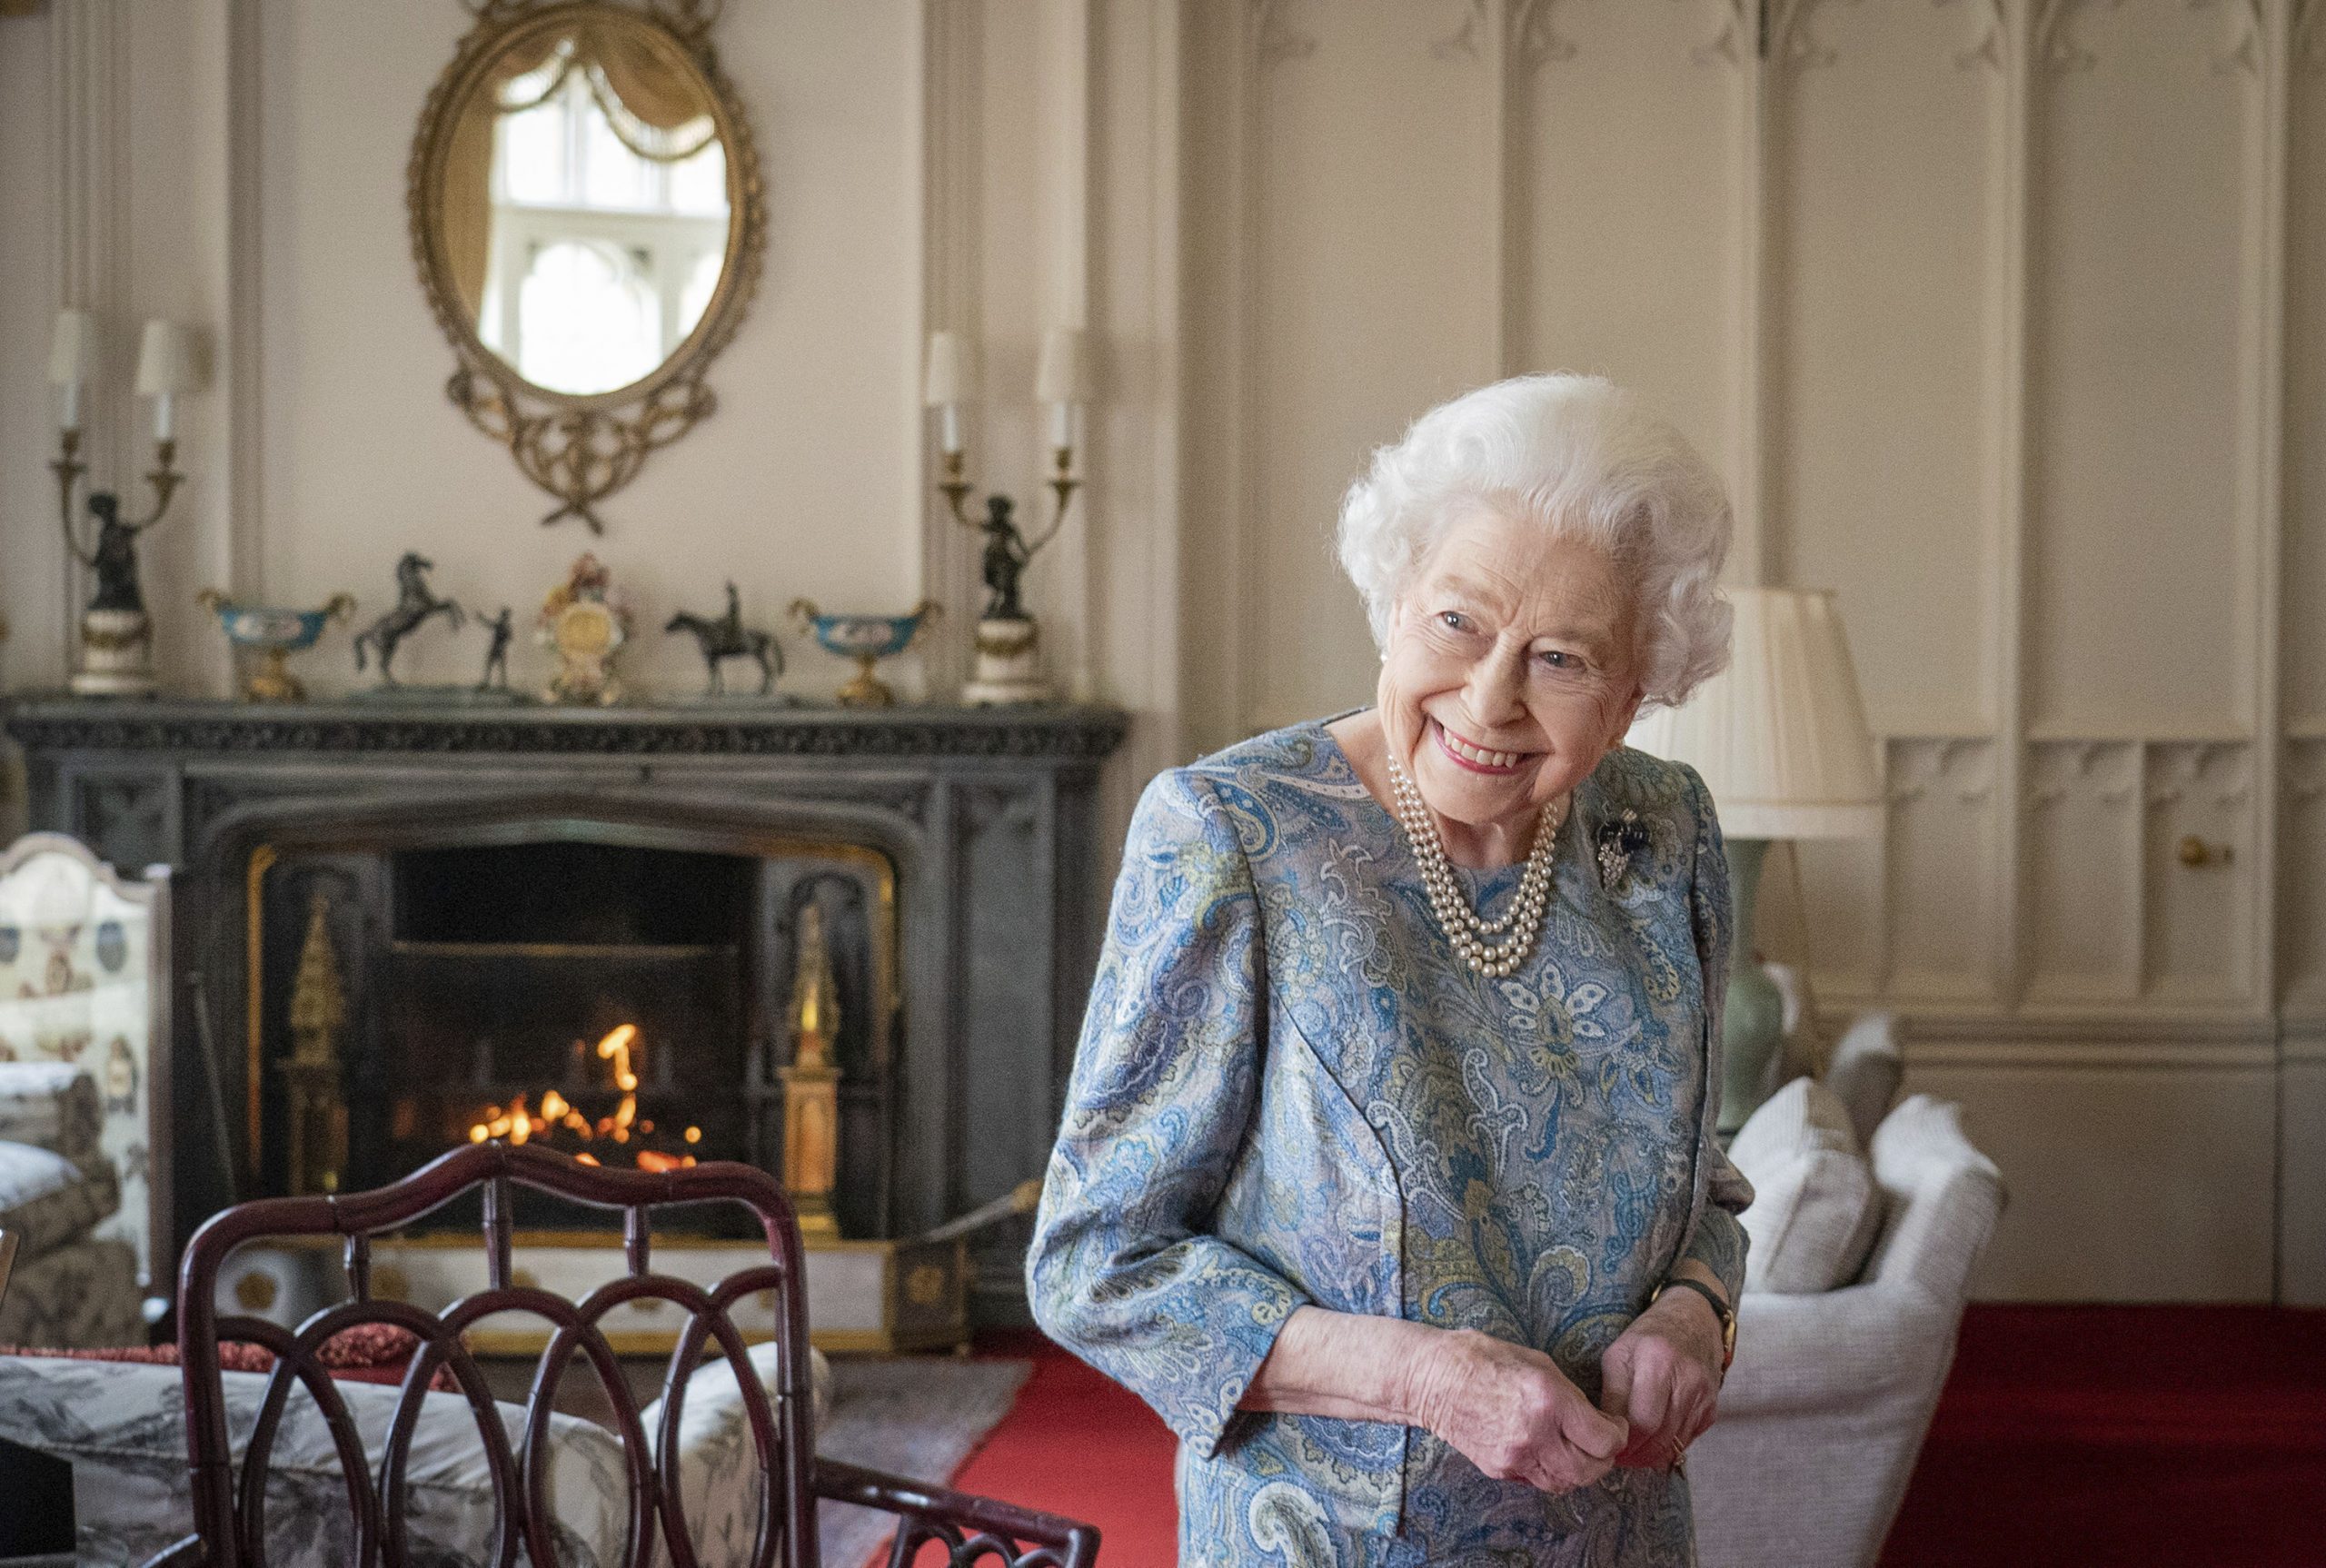 Who is Queen Elizabeth II?